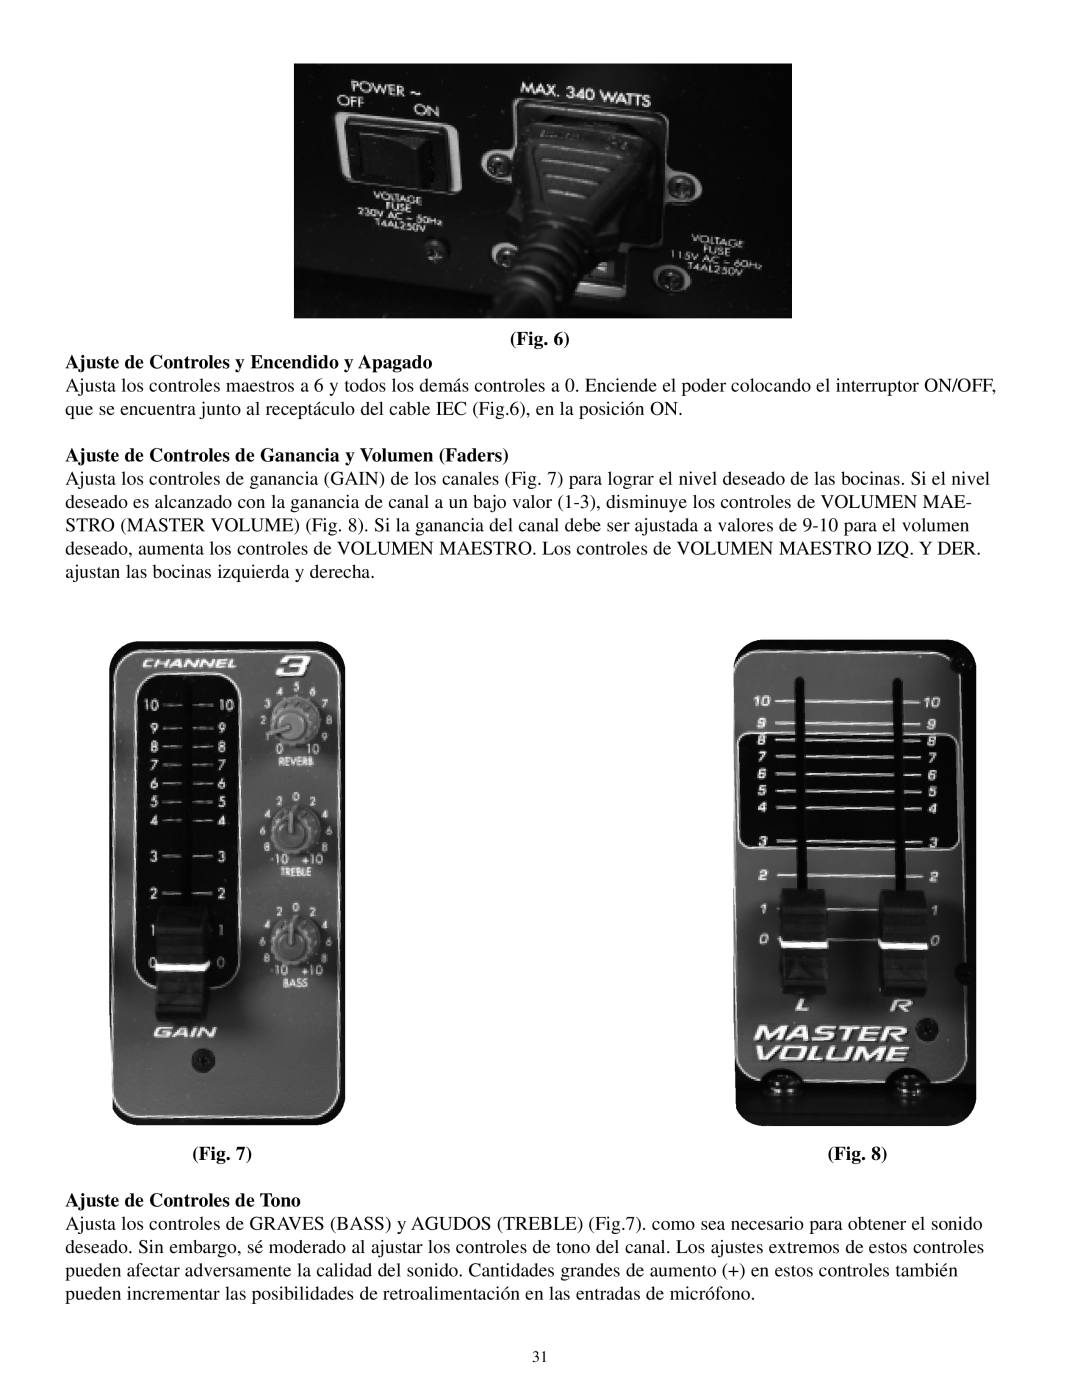 Musica 2000 manual Ajuste de Controles y Encendido y Apagado, Ajuste de Controles de Ganancia y Volumen Faders 